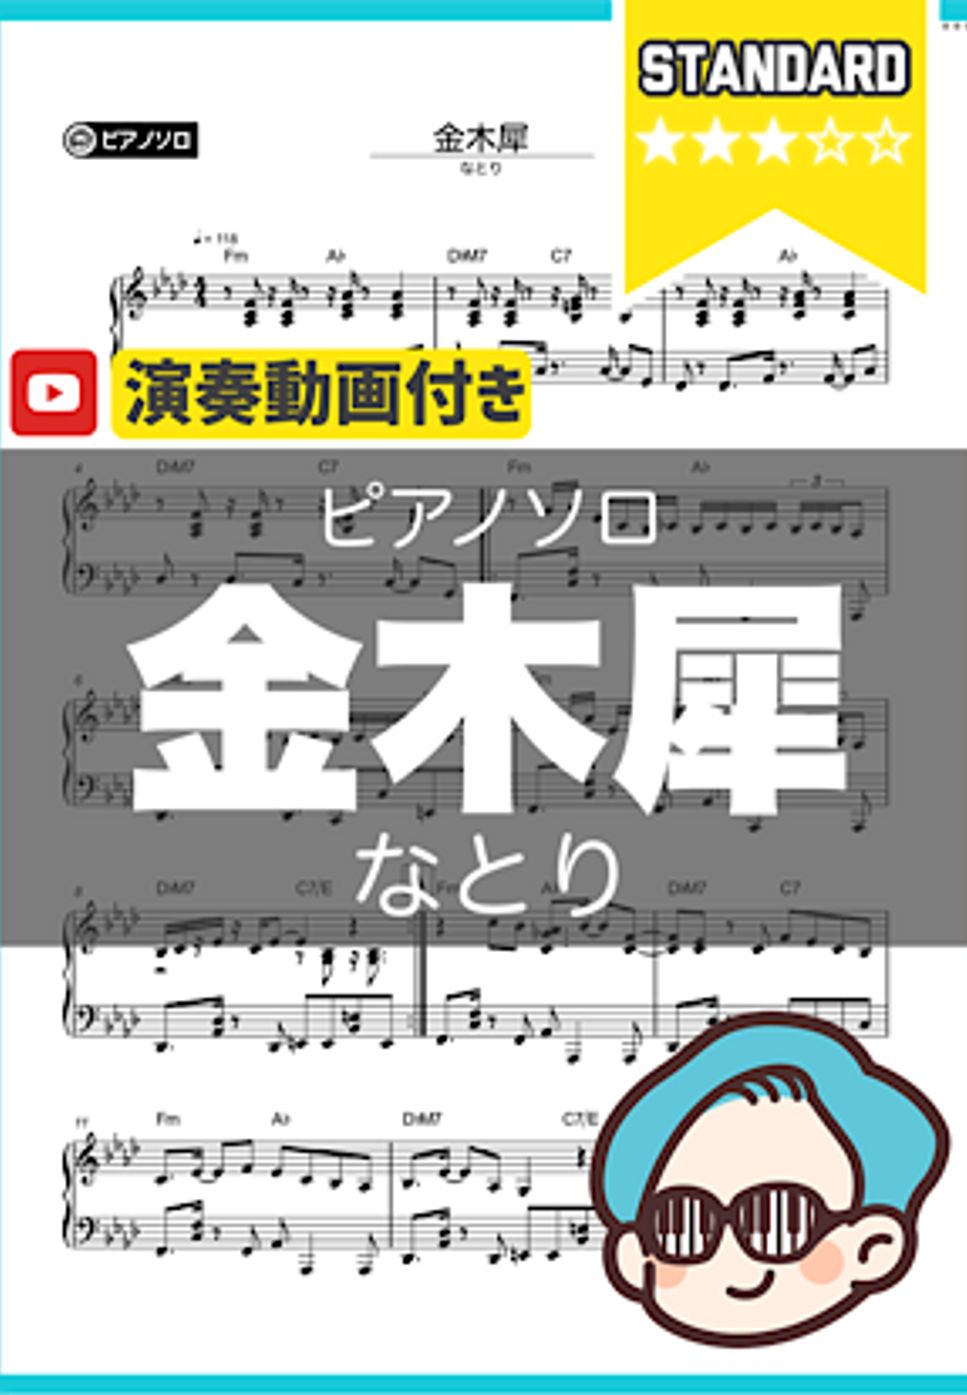 なとり - 金木犀 by シータピアノ